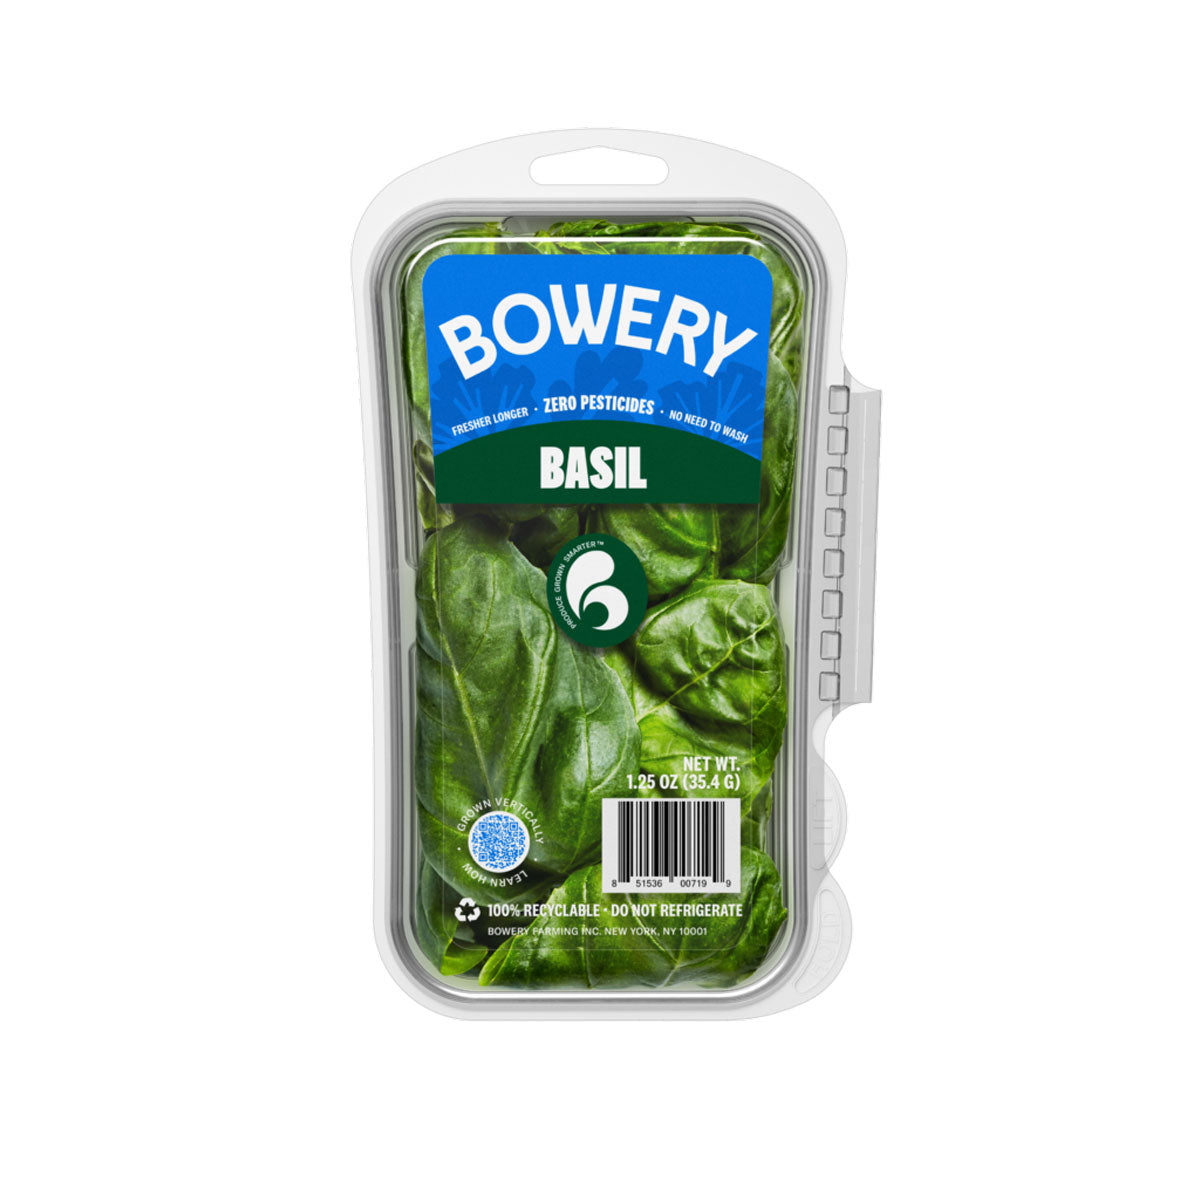 Bowery Basil 1.25 Oz Bag